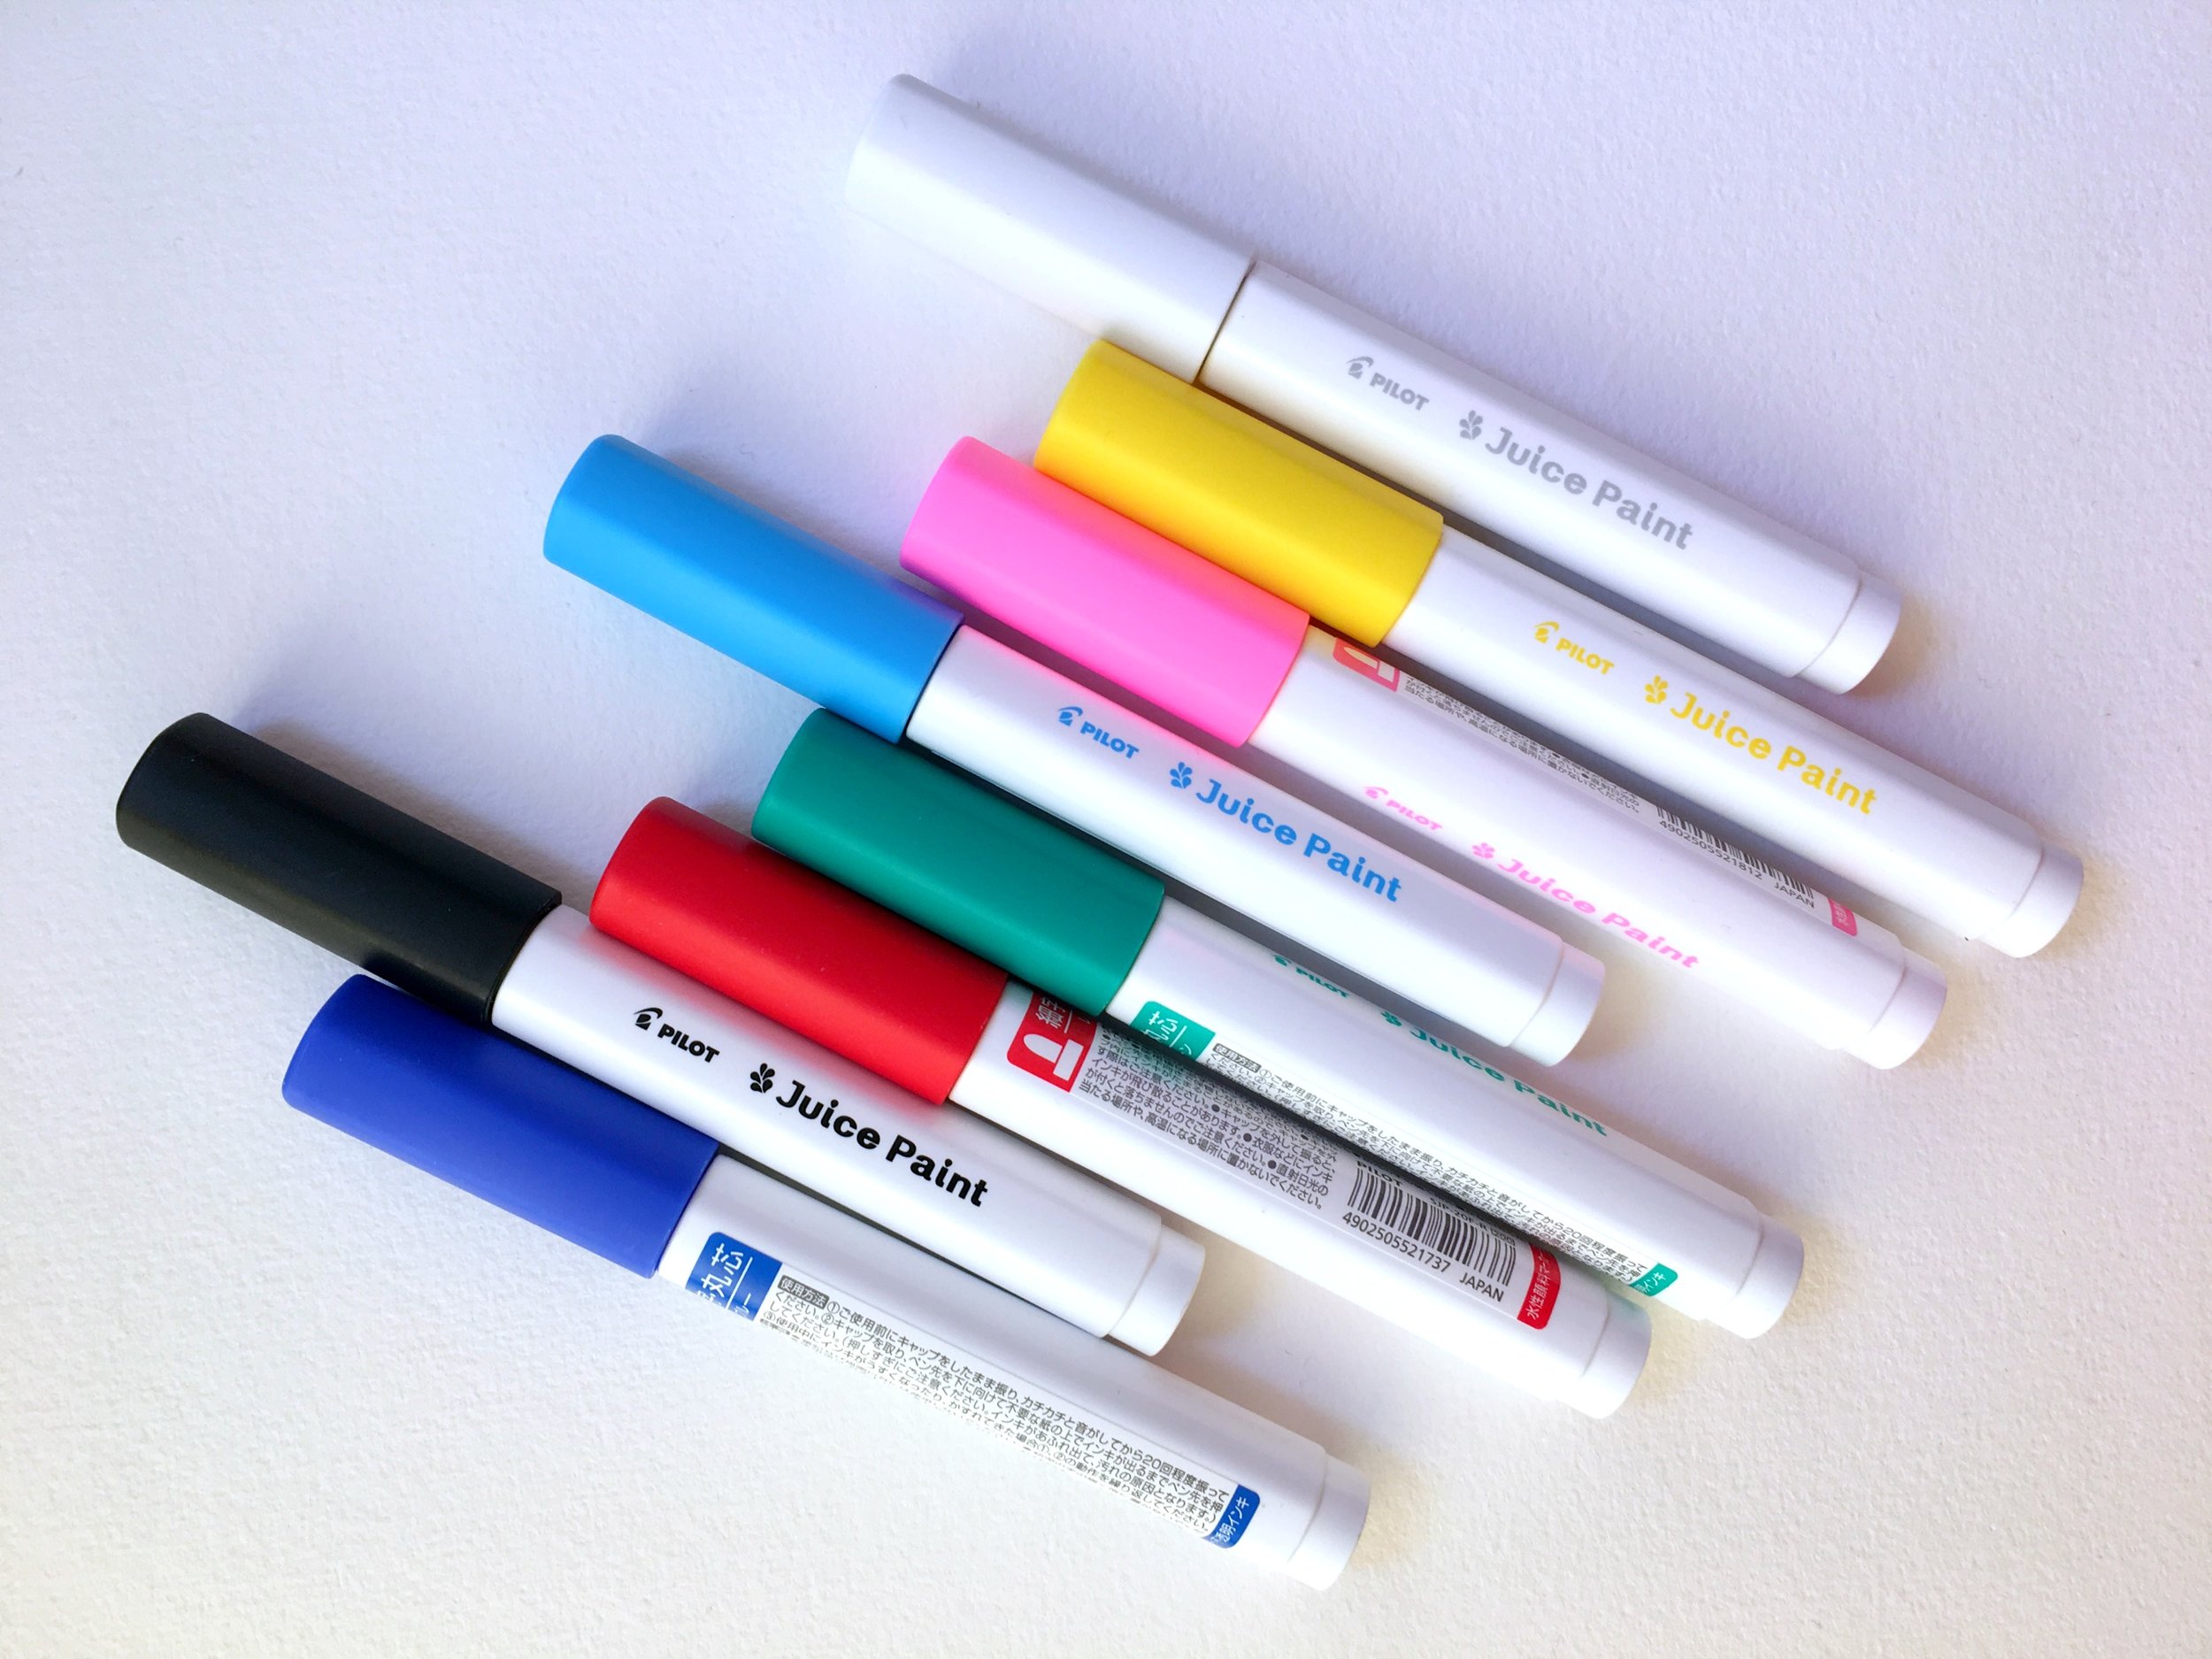 Pilot Juice Paint Marker 8 color Set Review — The Pen Addict